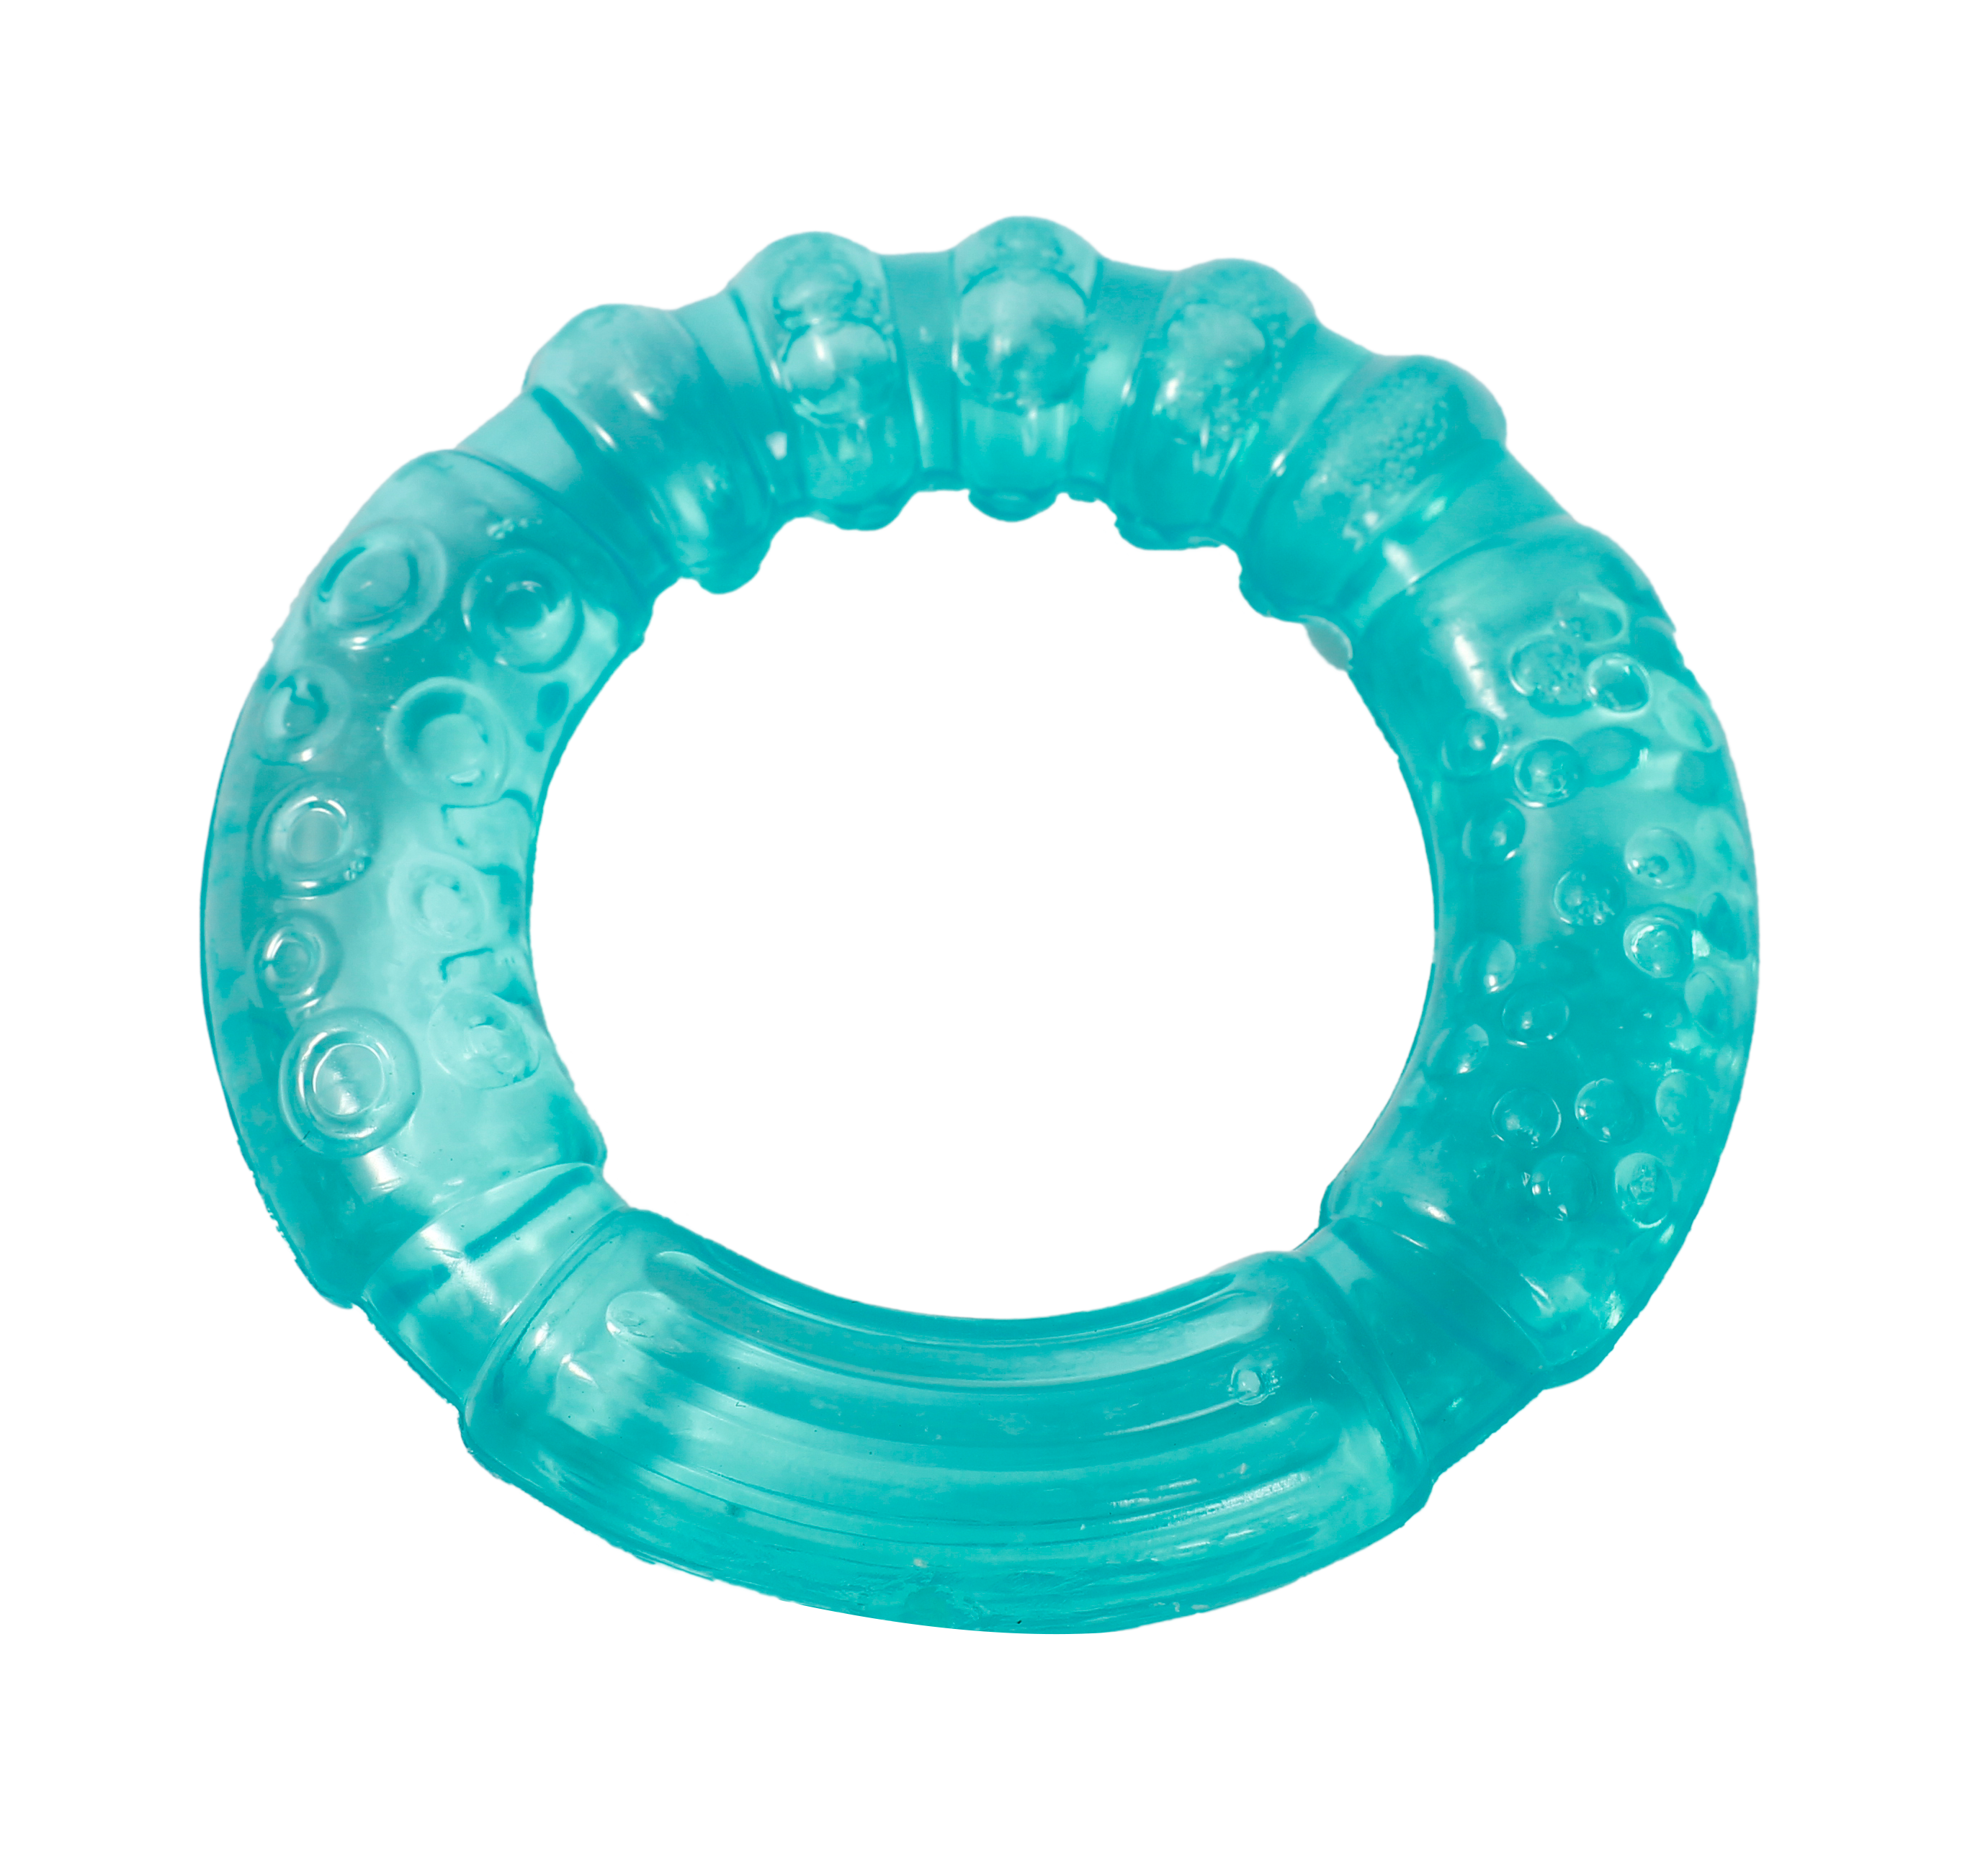 Прорезыватель для зубов Lindo, с водой, голубой (LI 304 гол) - фото 1